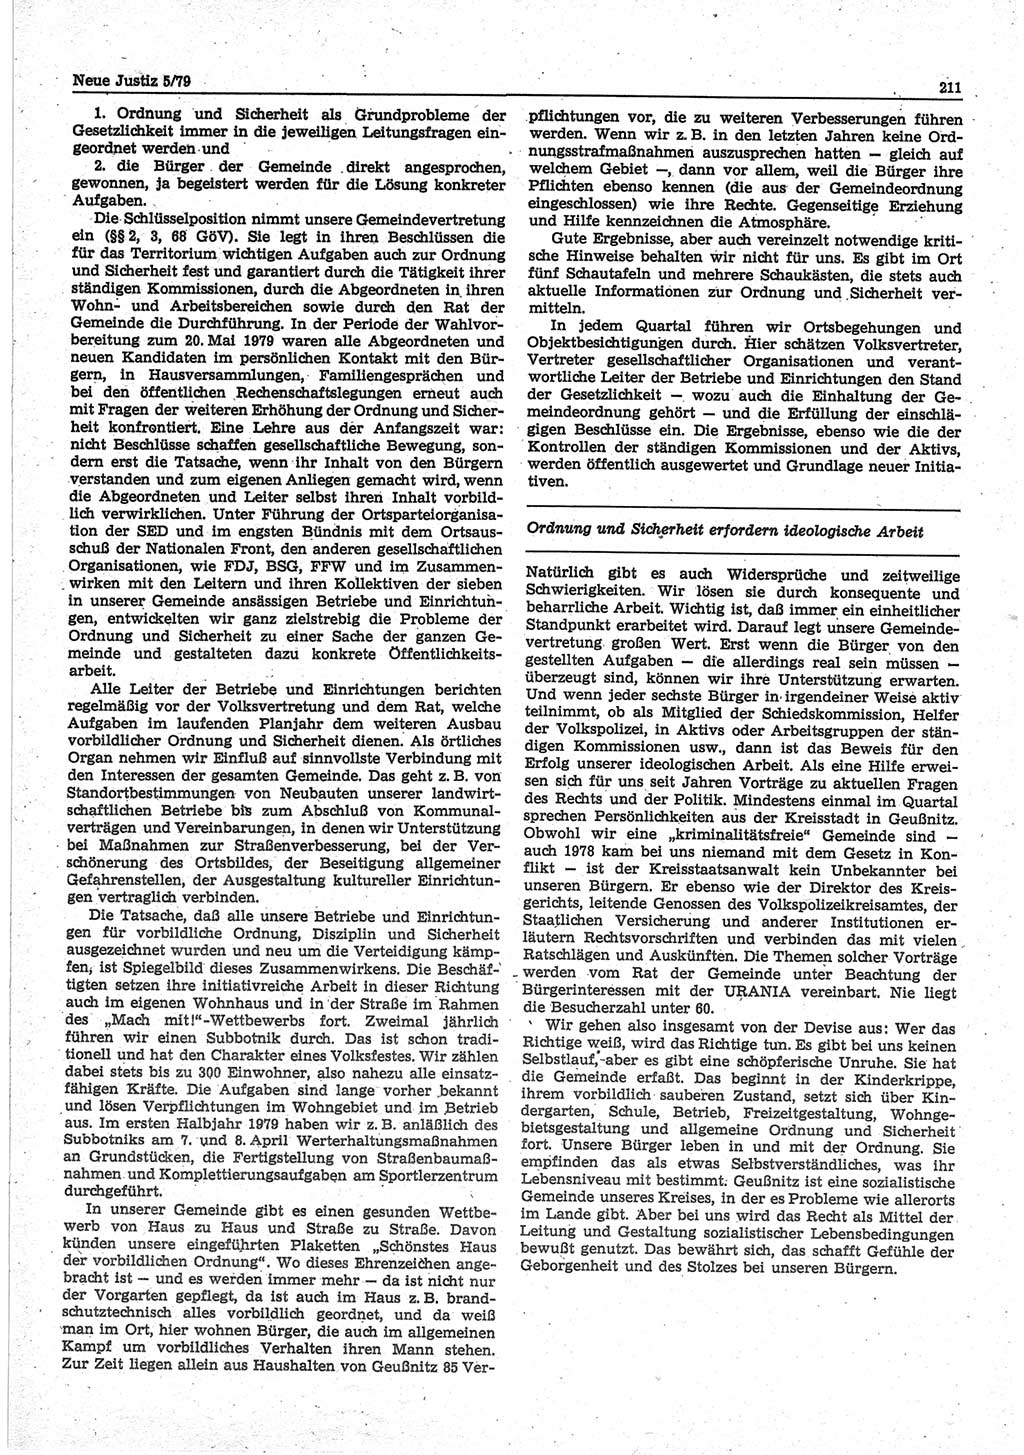 Neue Justiz (NJ), Zeitschrift für sozialistisches Recht und Gesetzlichkeit [Deutsche Demokratische Republik (DDR)], 33. Jahrgang 1979, Seite 211 (NJ DDR 1979, S. 211)